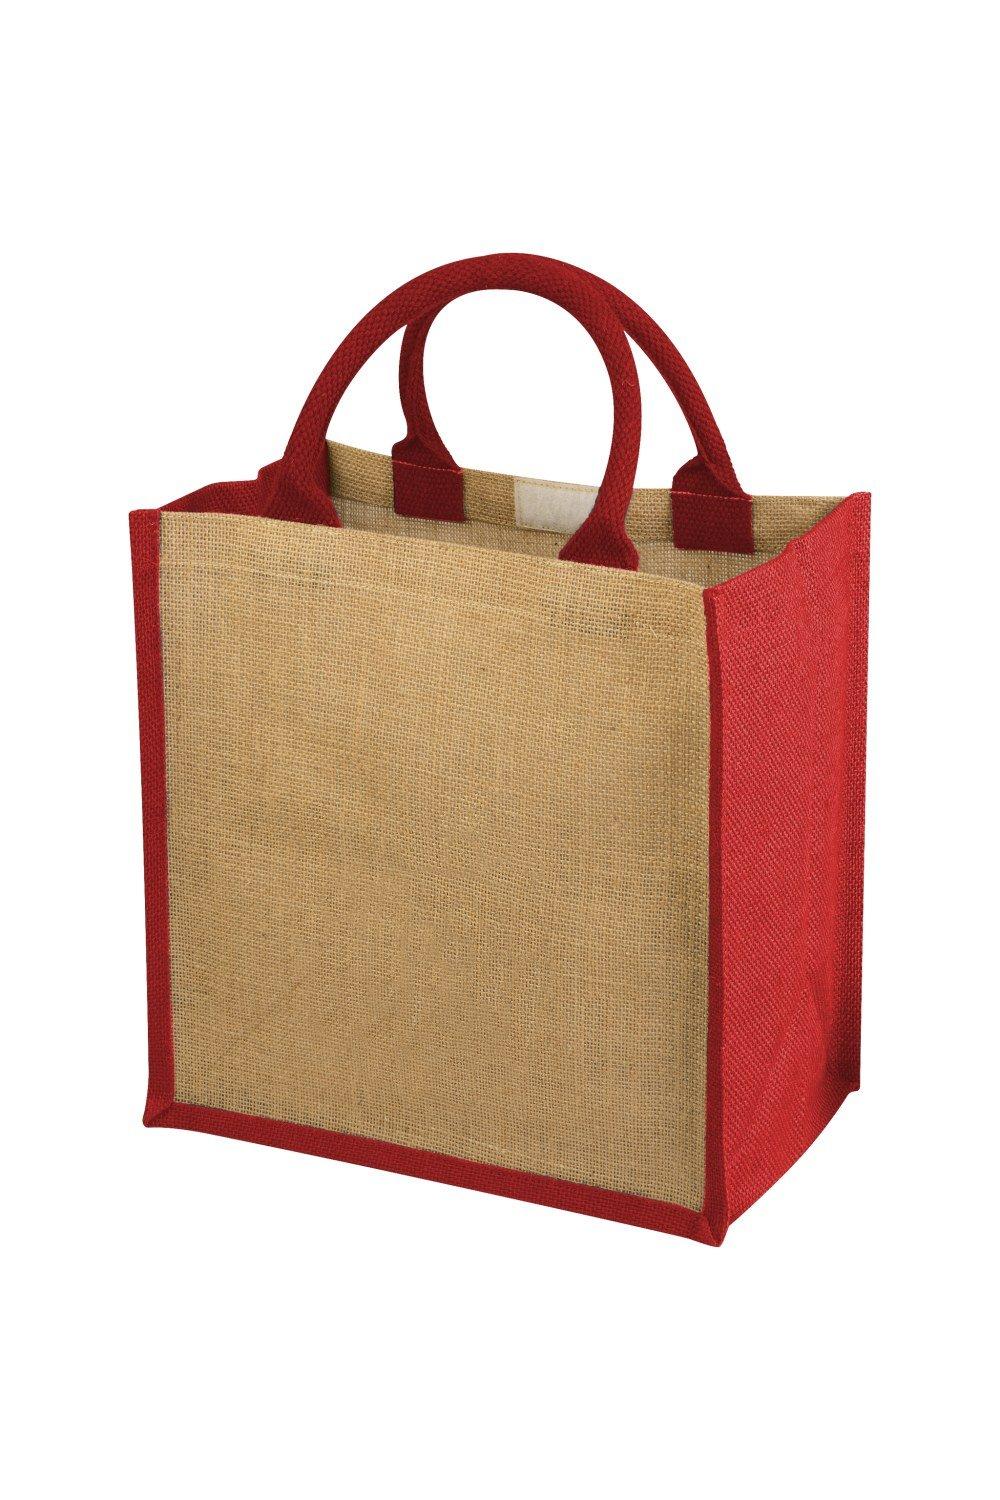 Подарочная сумка из джута Ченнаи Bullet, бежевый сумка торба ручной работы из джута синяя juli jute